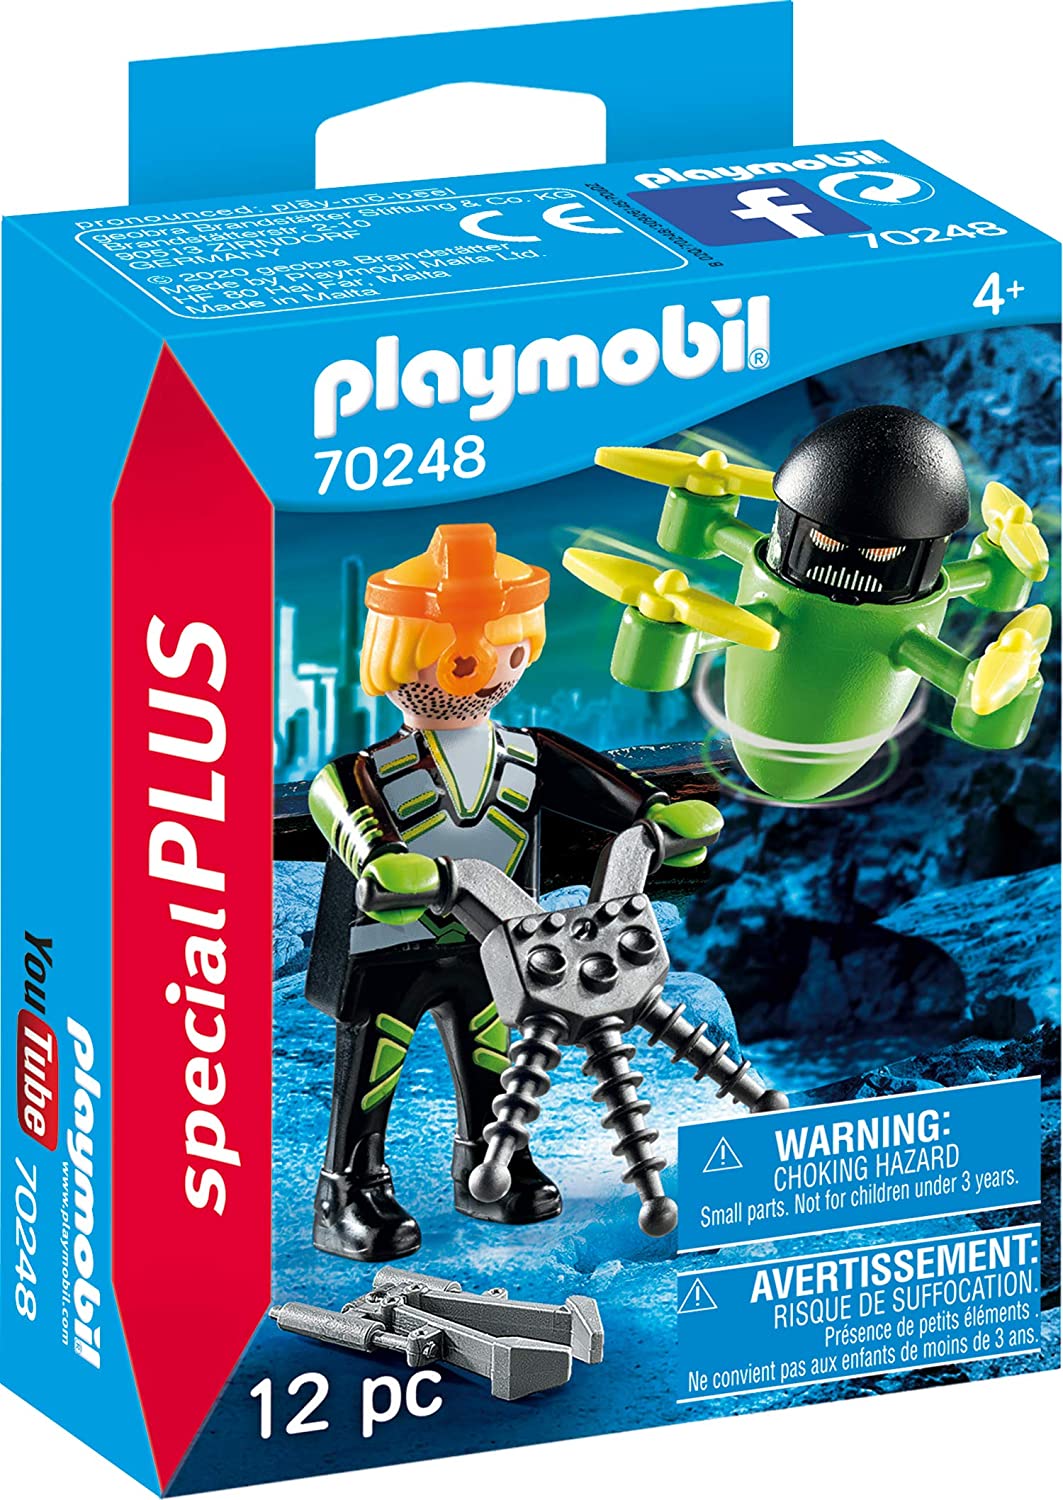 Playmobil 70248 Agente Con Drone toysvaldichiana.it 